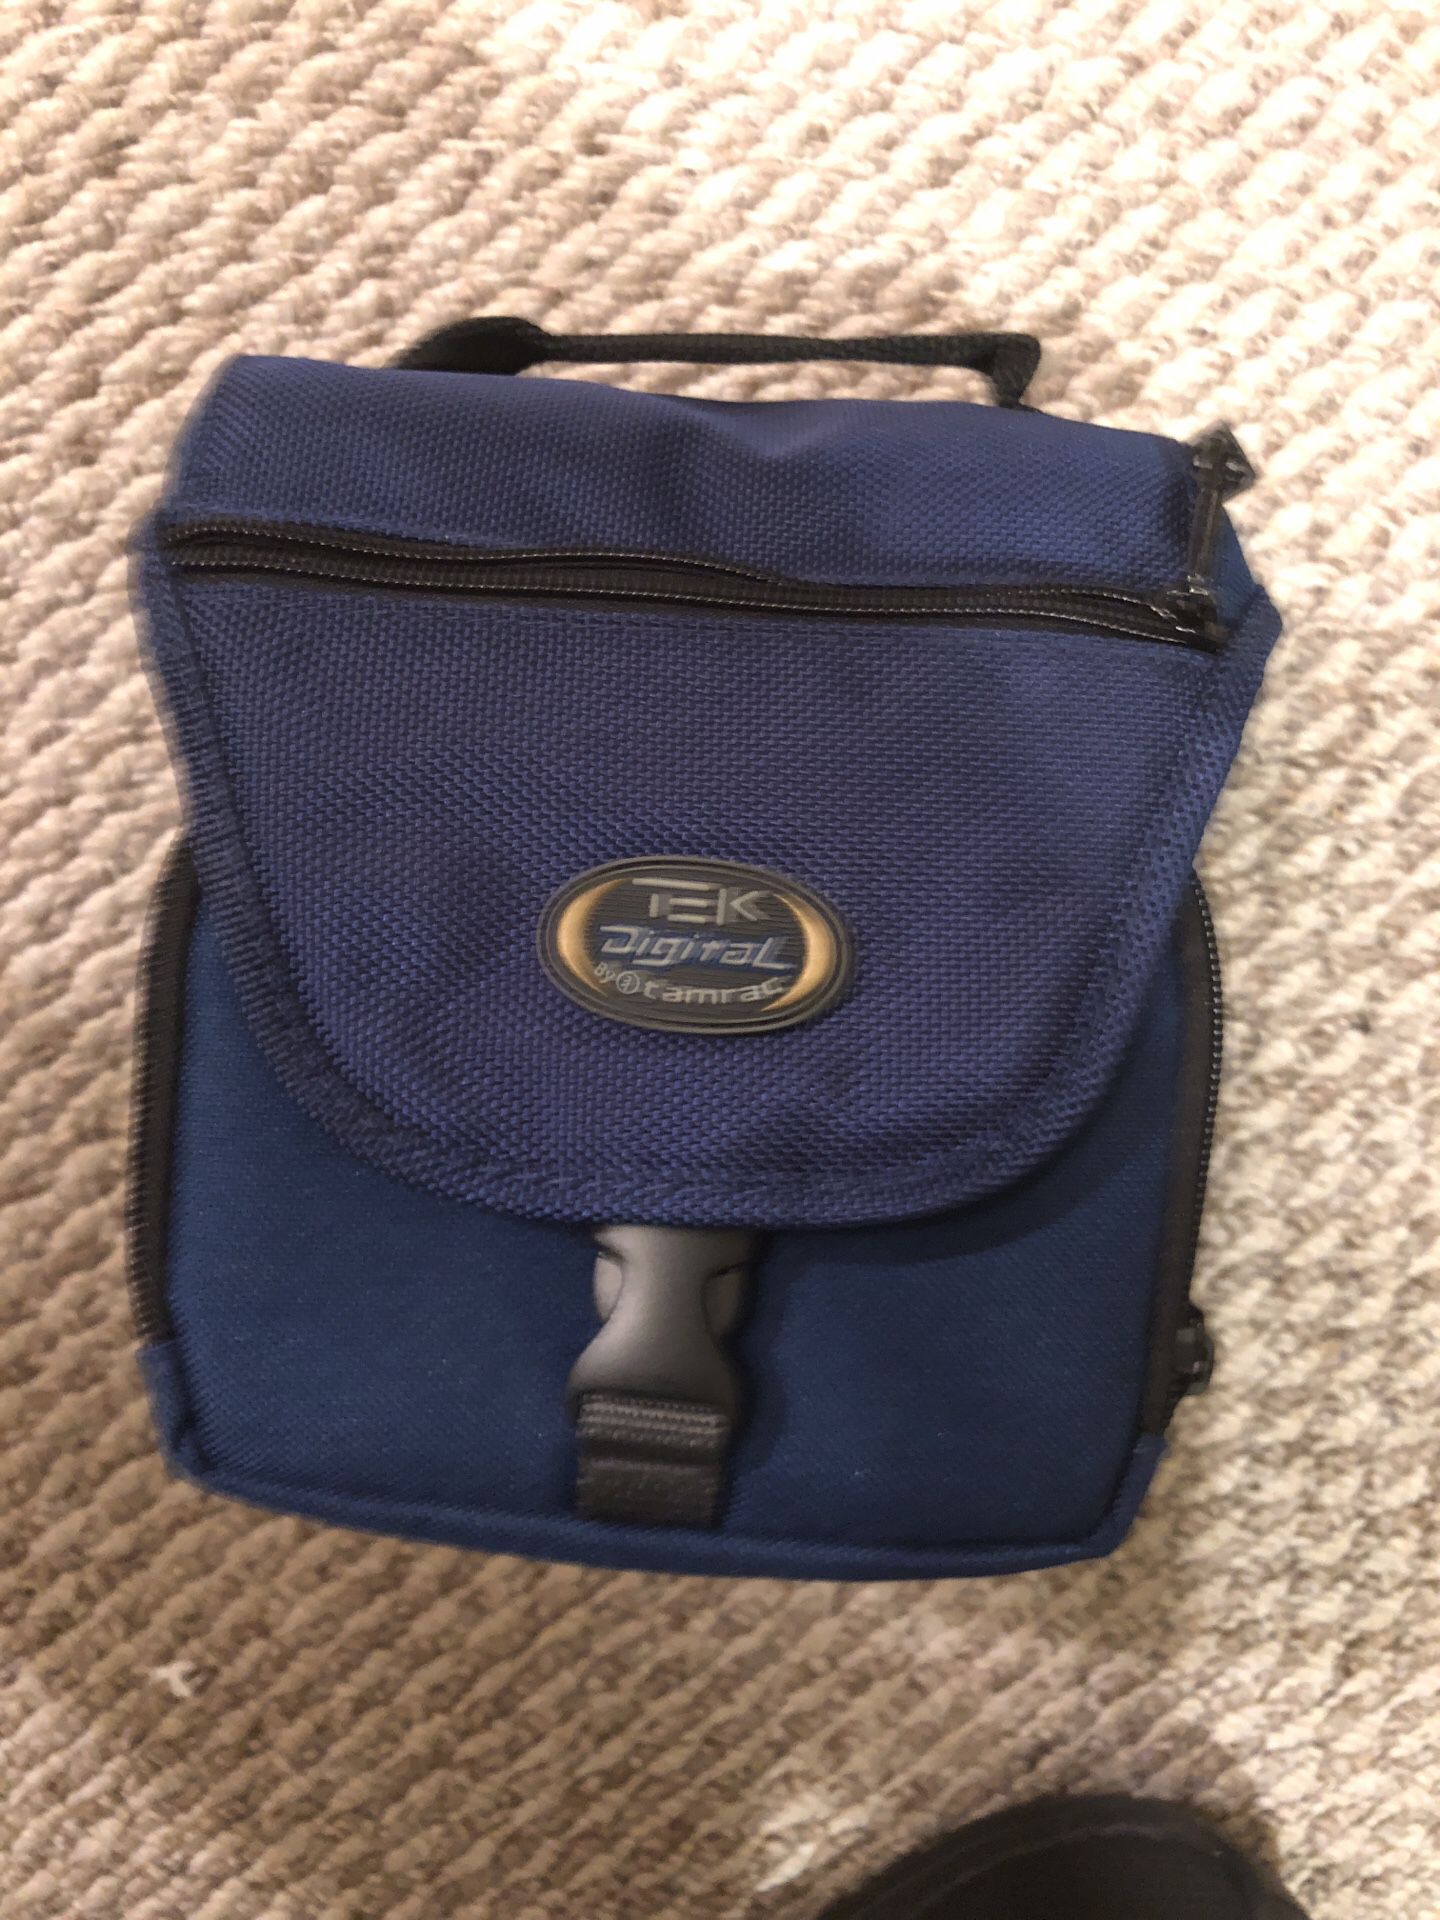 Tek Digital Camera Bag